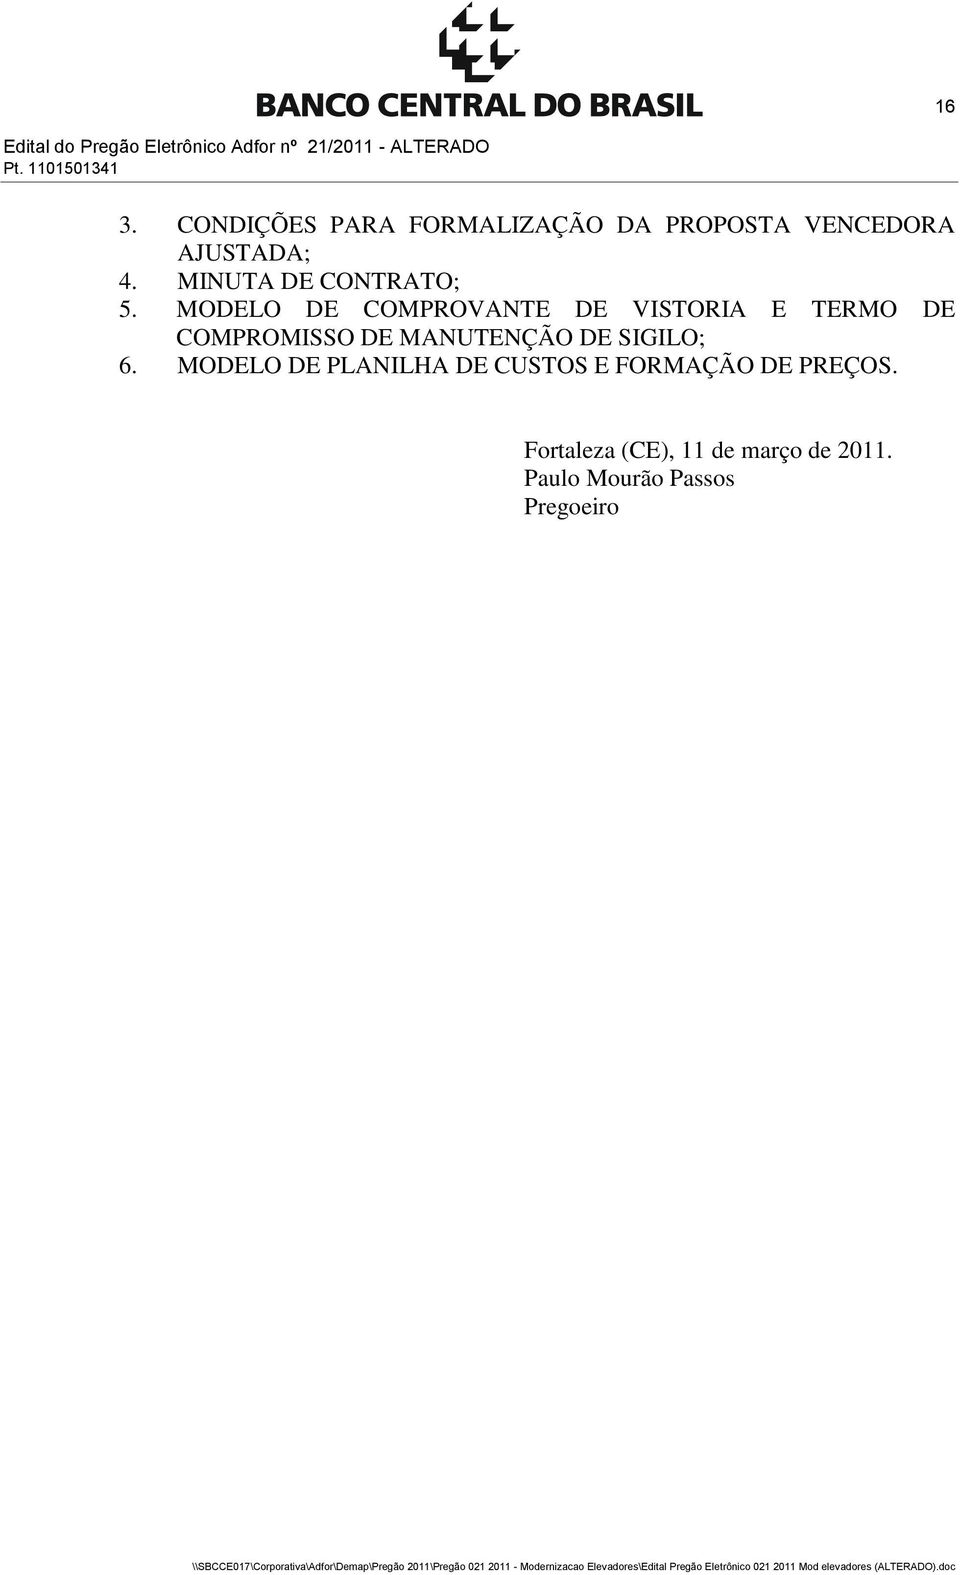 MODELO DE COMPROVANTE DE VISTORIA E TERMO DE COMPROMISSO DE MANUTENÇÃO DE SIGILO; 6.